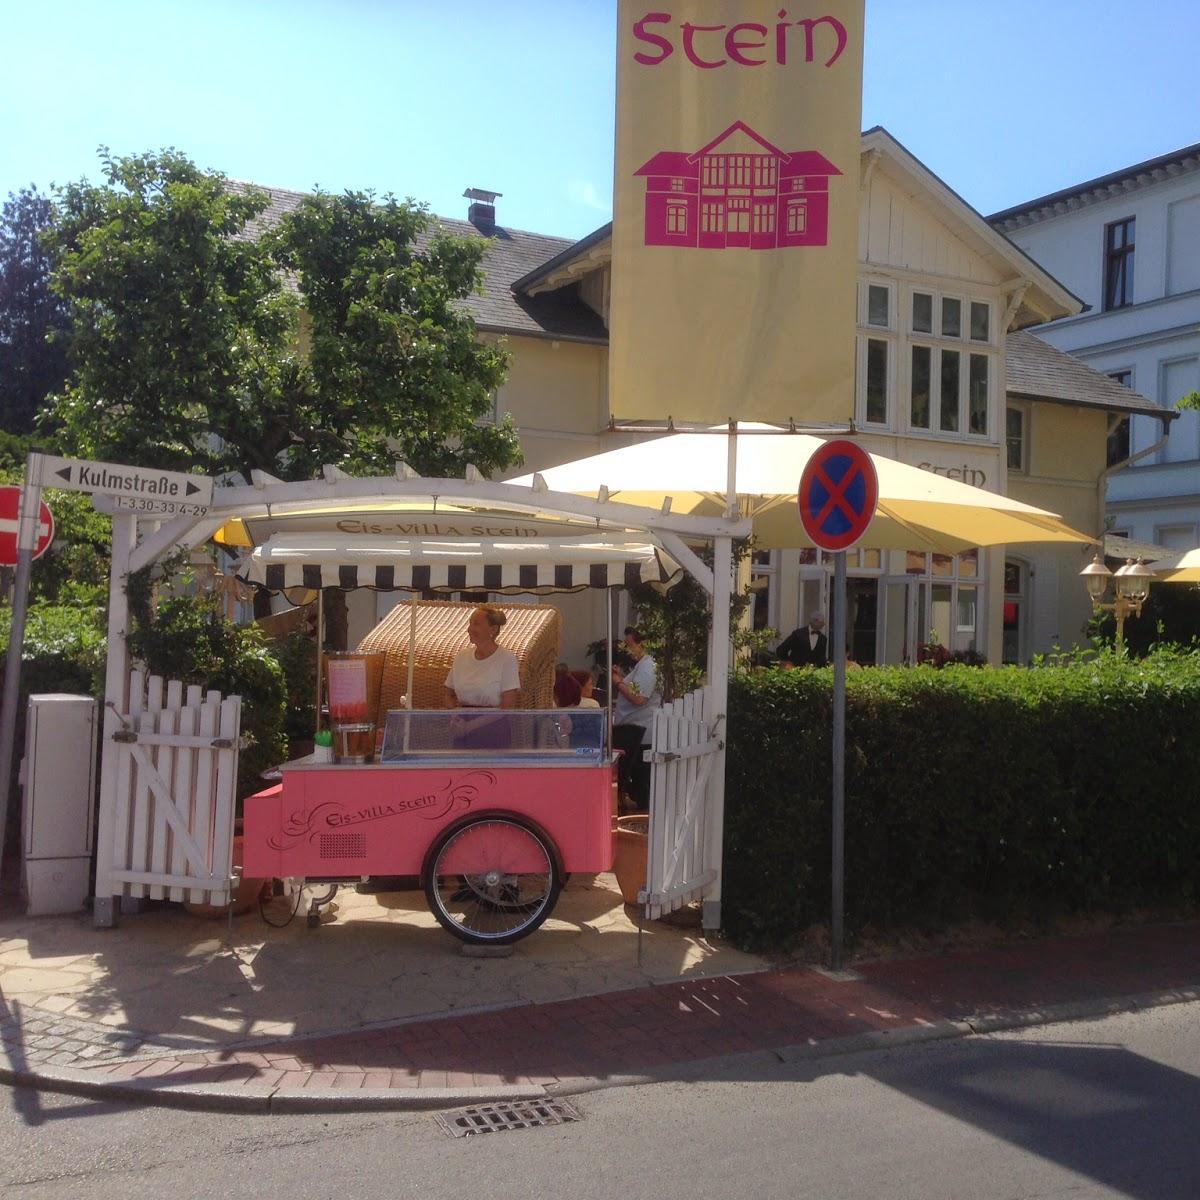 Restaurant "Restaurant by Eis-Villa Stein" in Heringsdorf